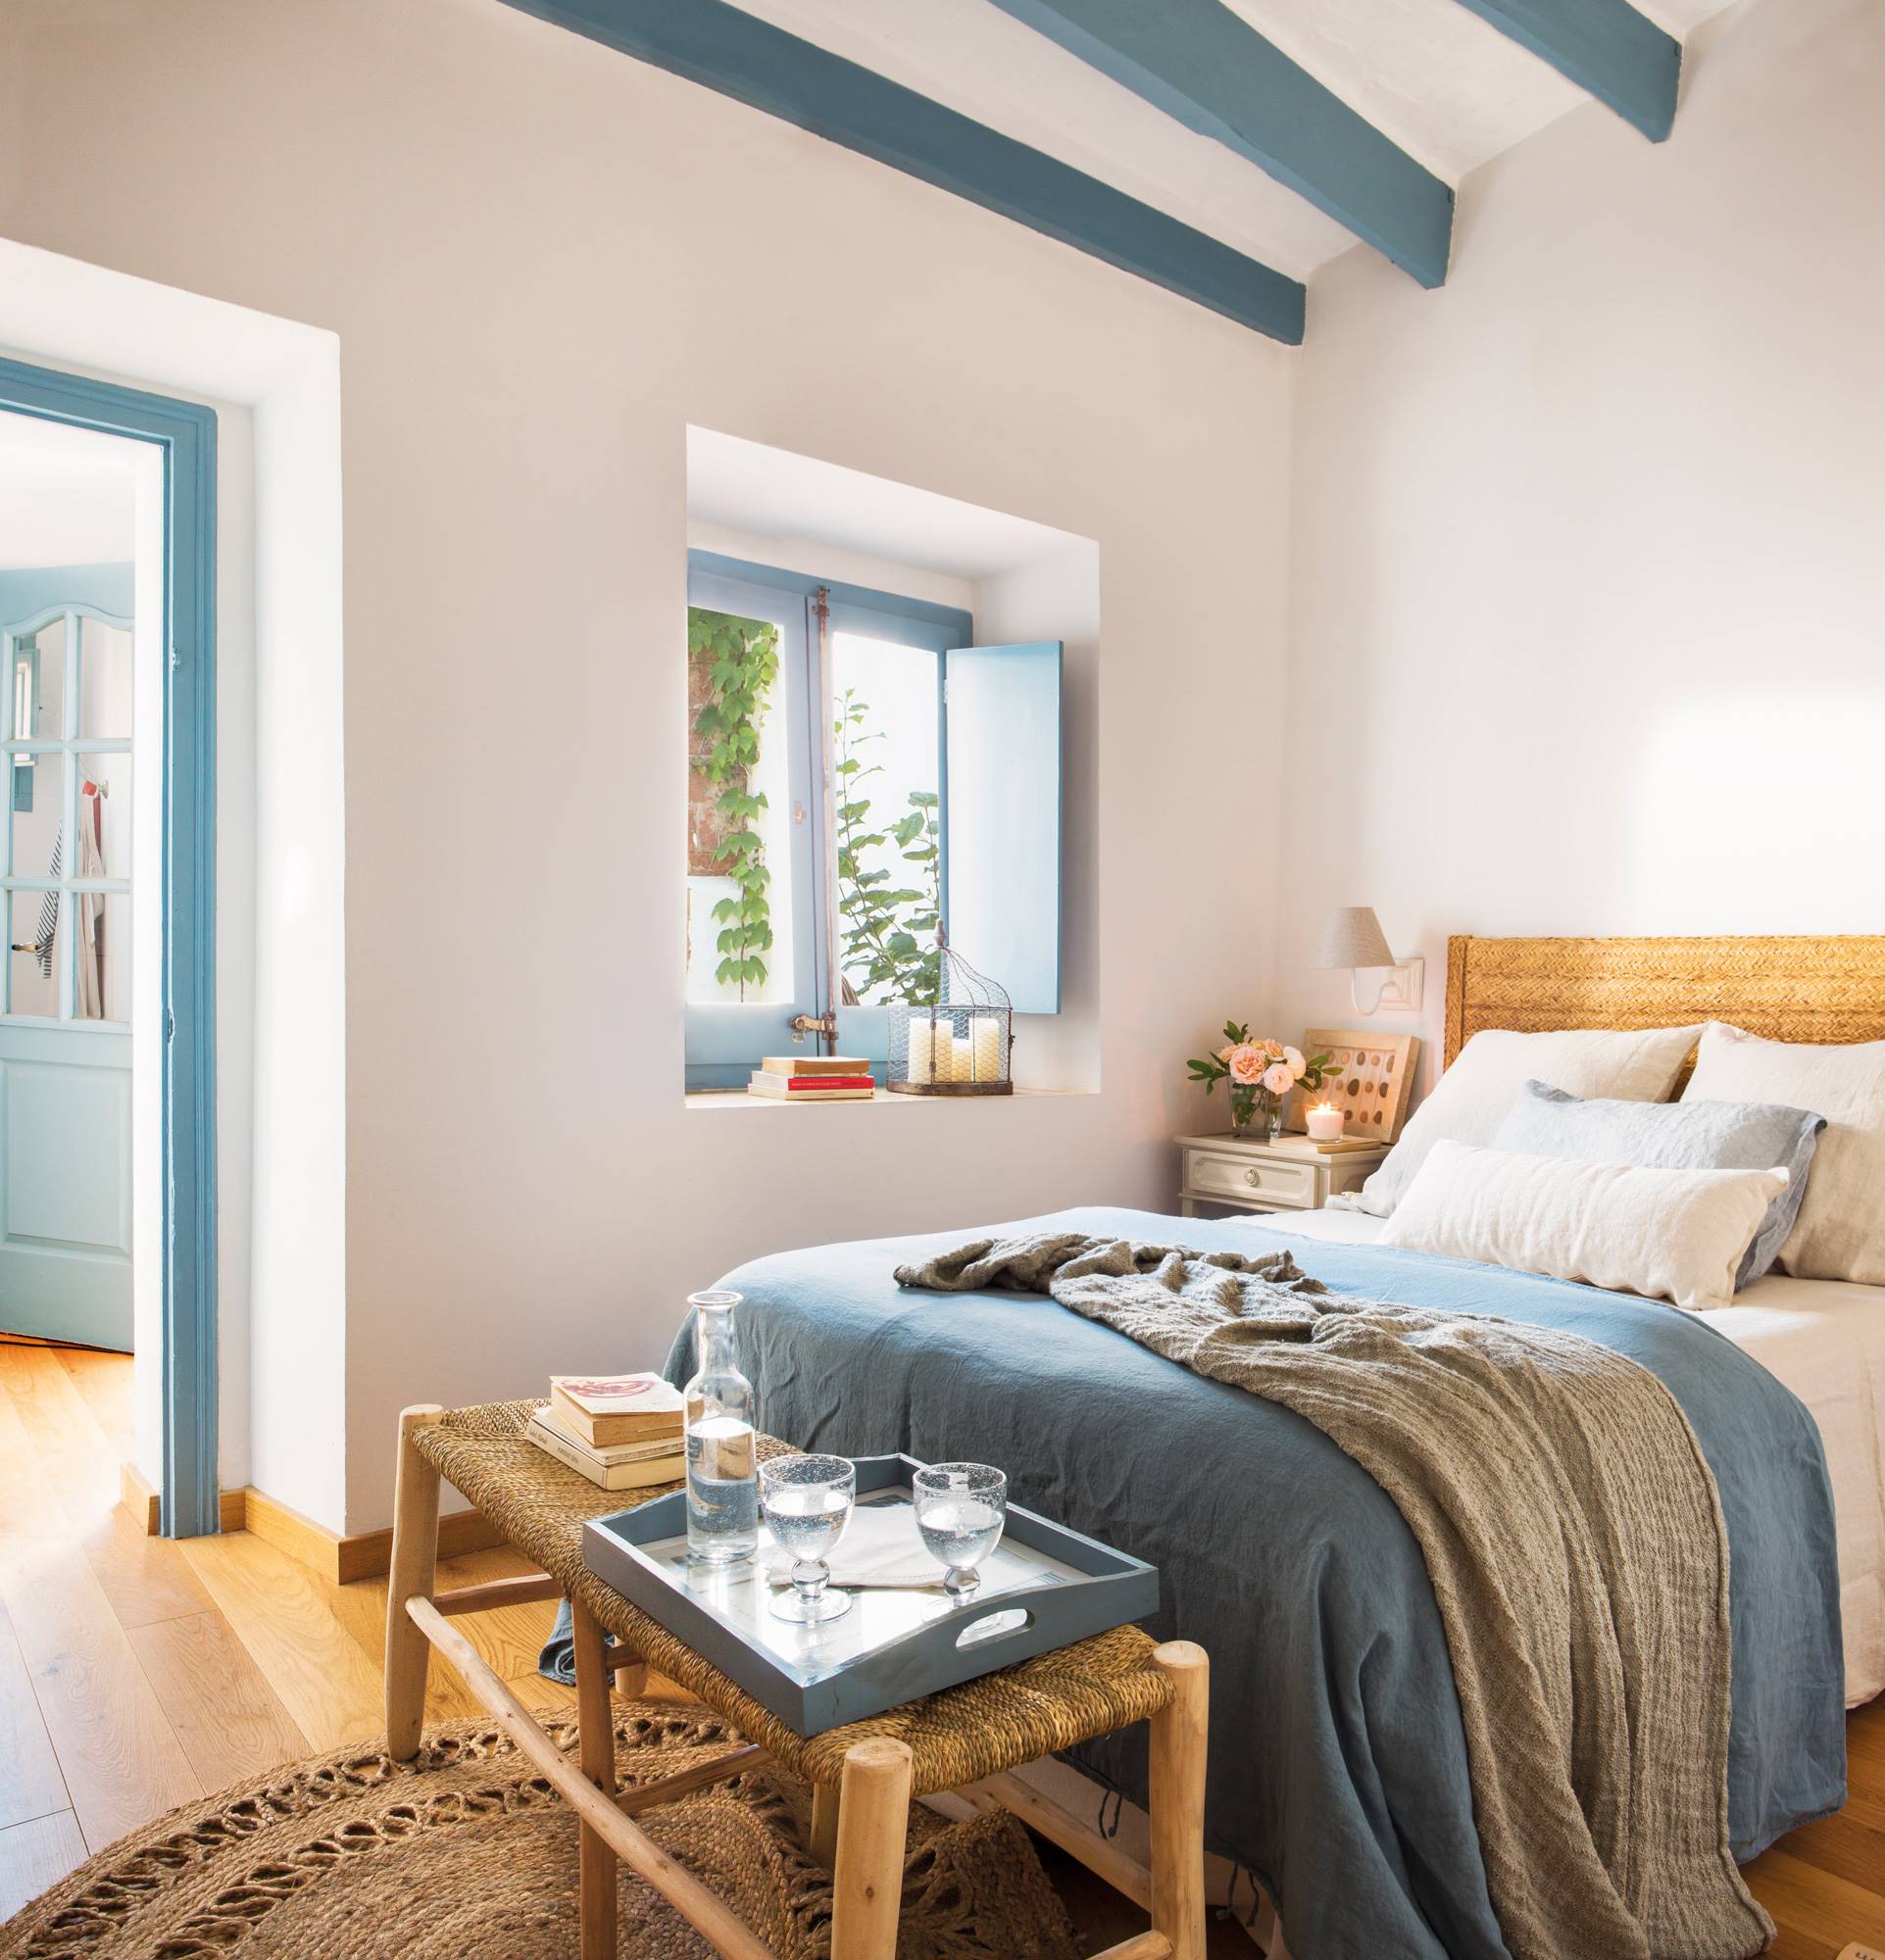 Dormitorio de verano en blanco y azul.